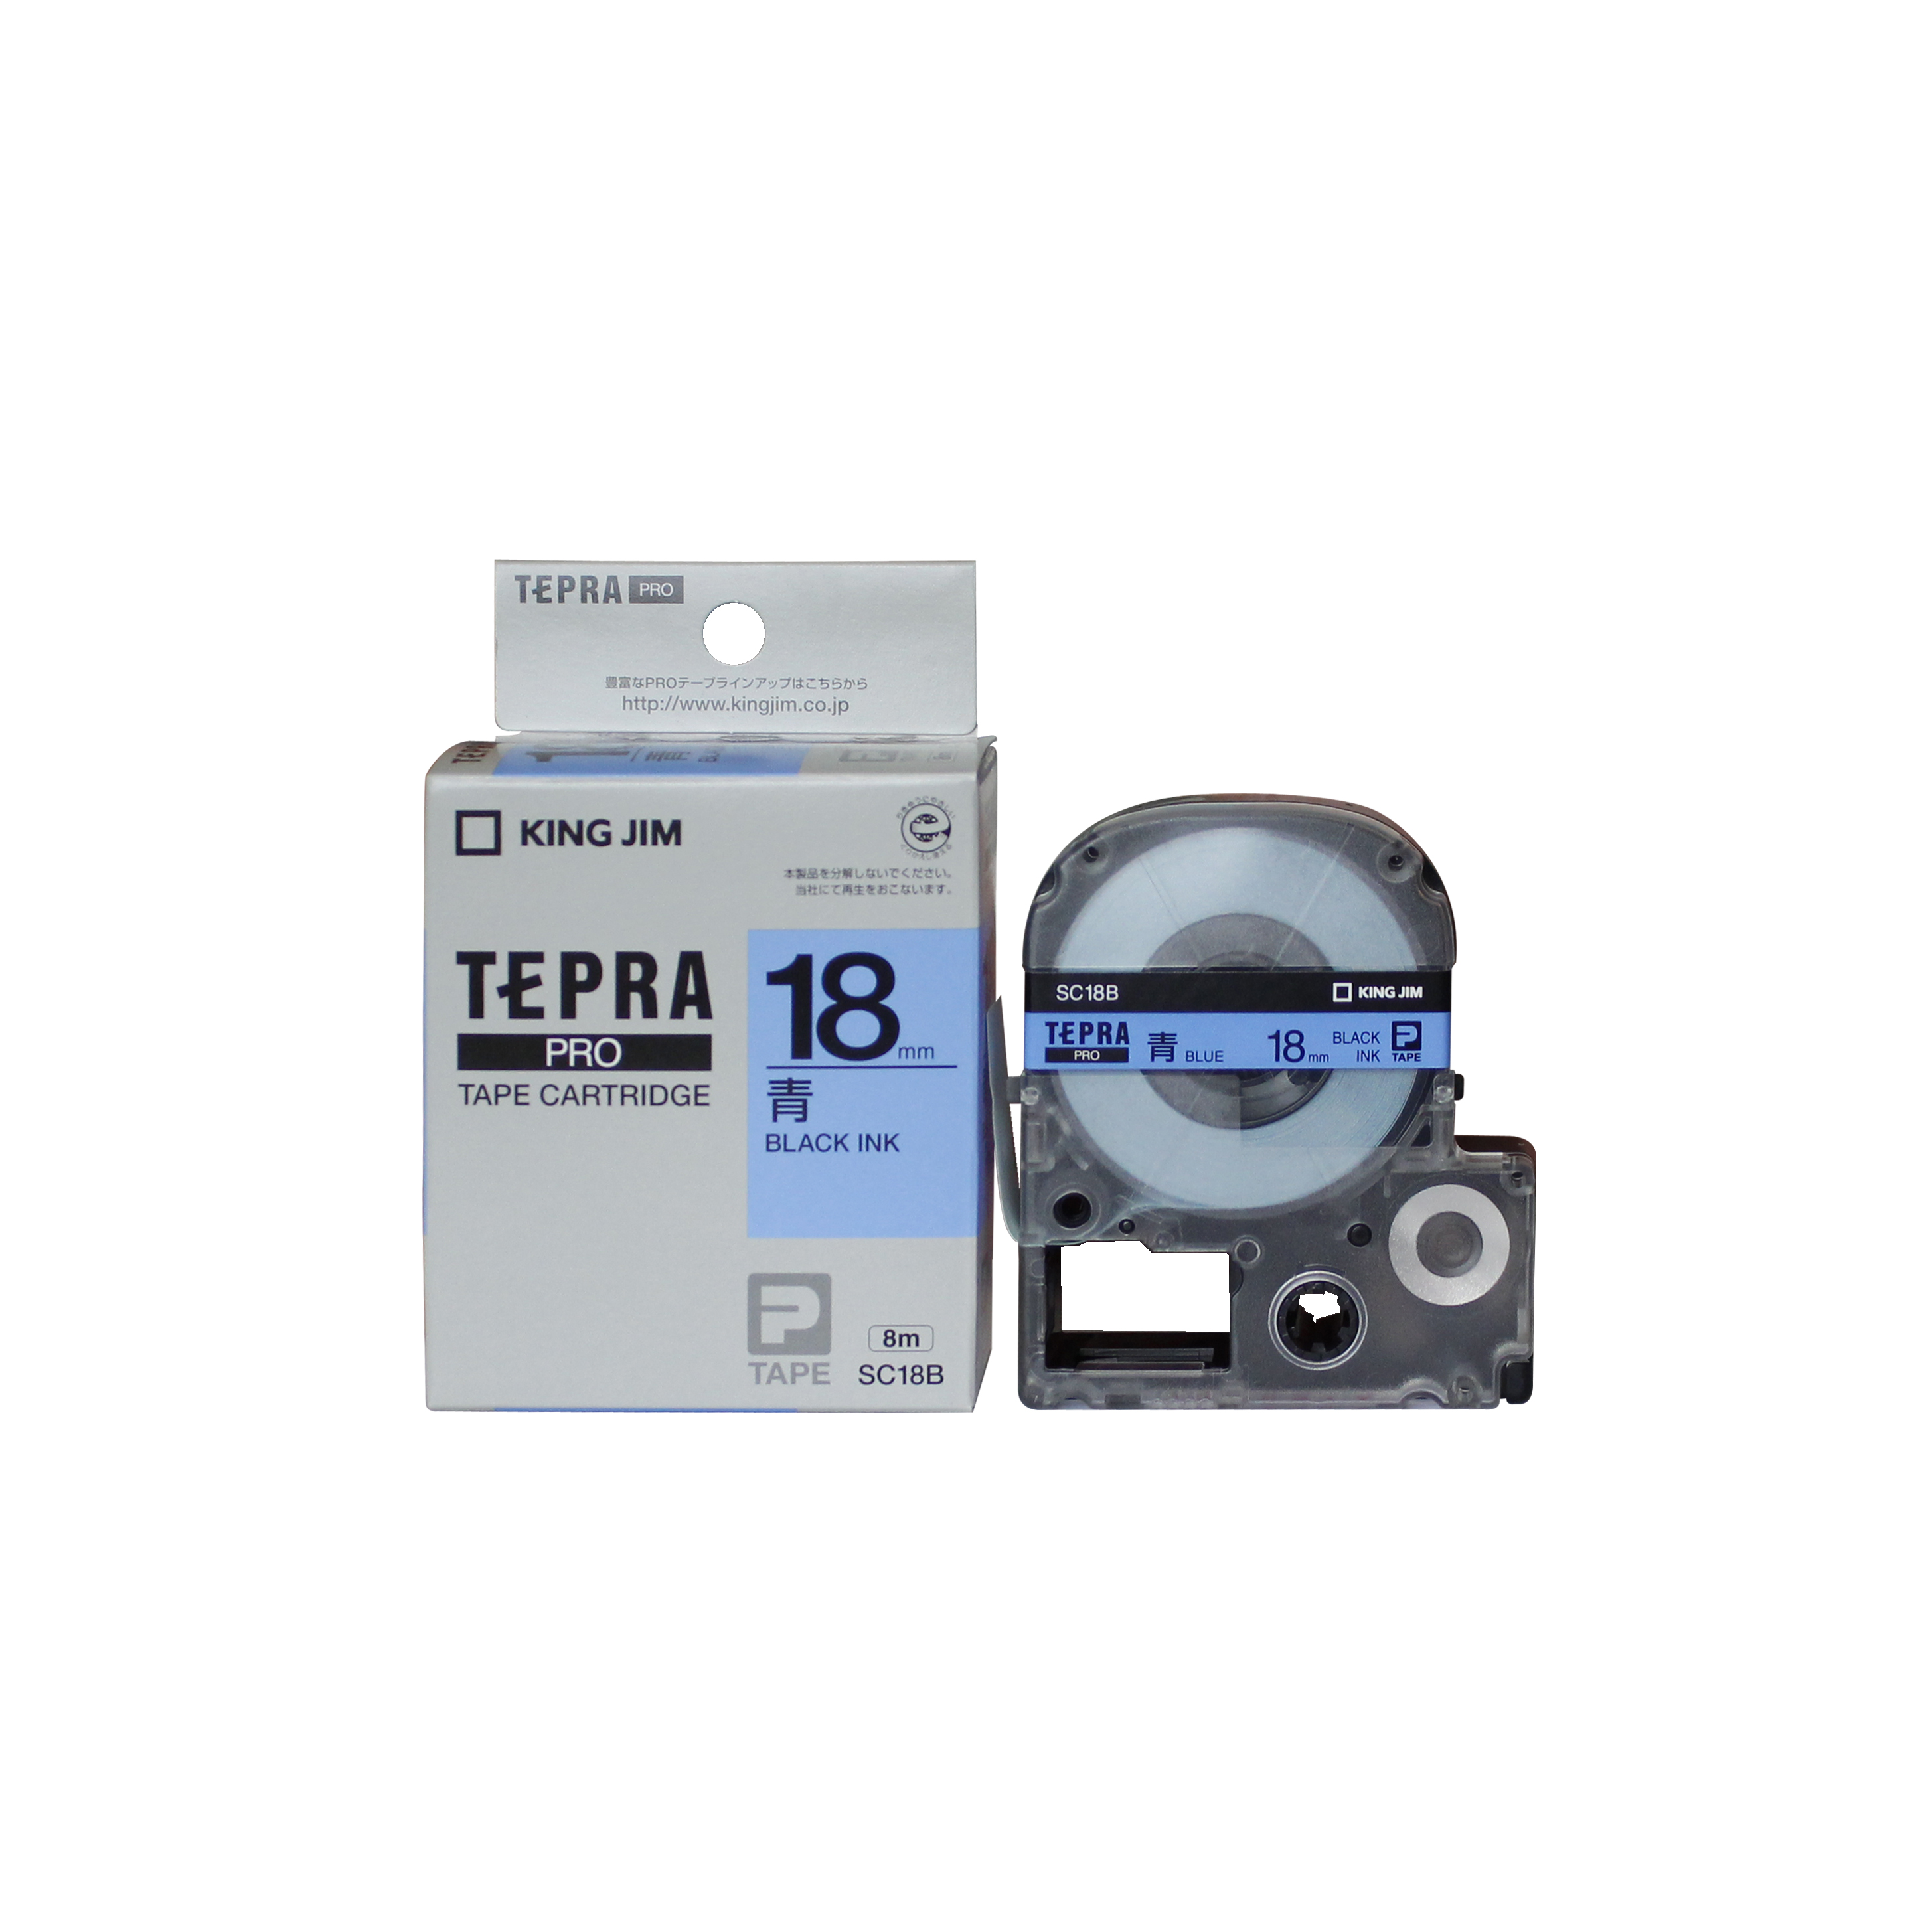 Băng mực in nhãn Tepra cỡ 18mm dùng cho máy TEPRA PRO SR-R170V / SR530 / SR970 - HÀNG CHÍNH HÃNG KING JIM